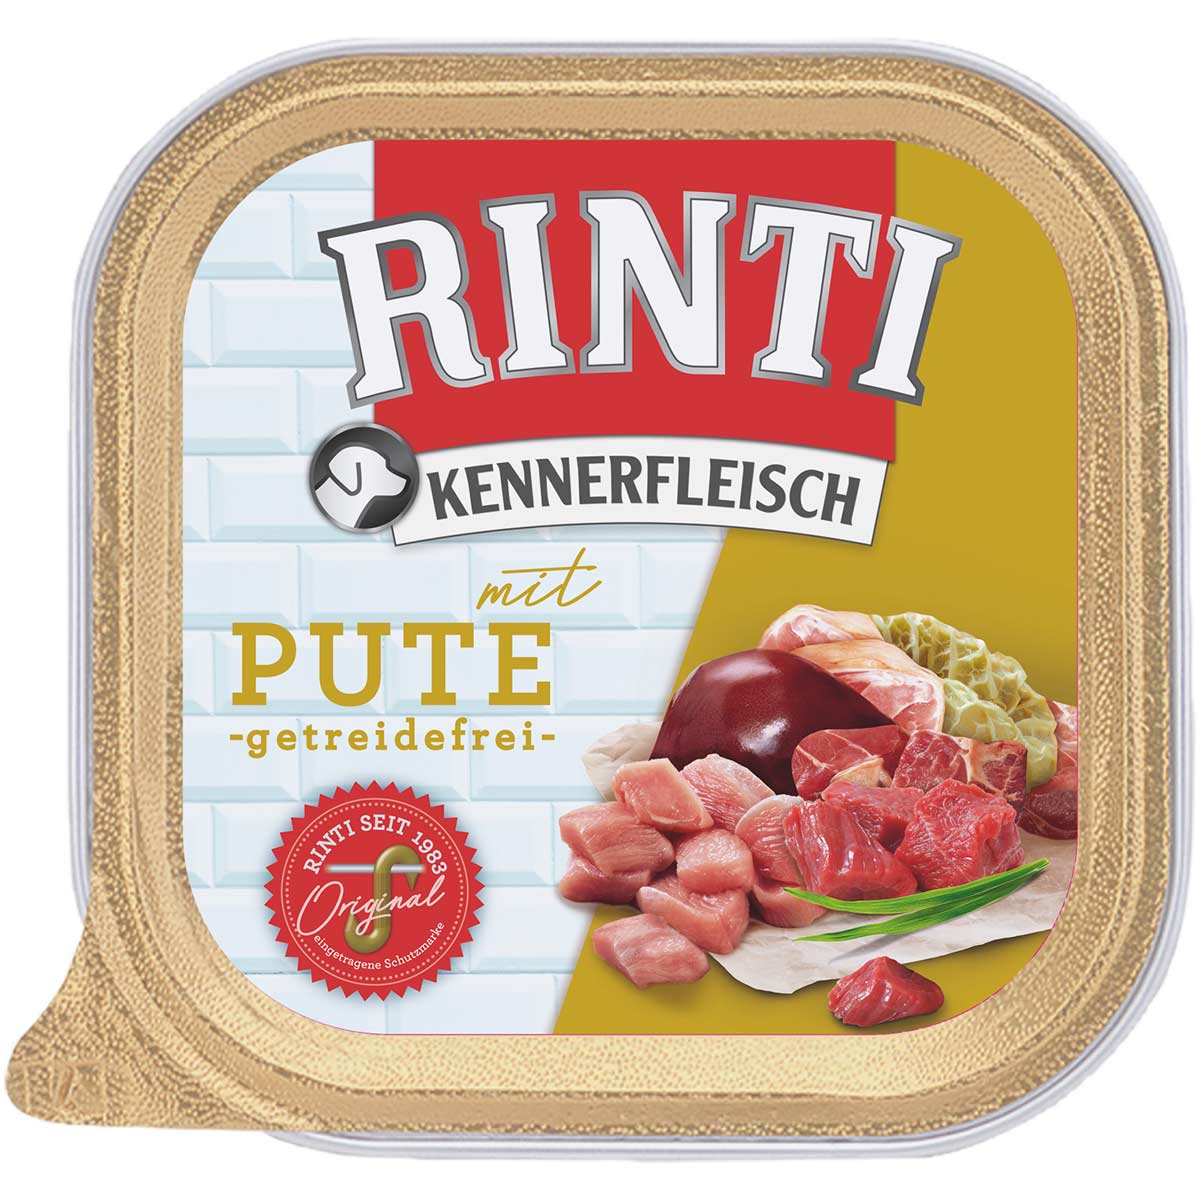 Rinti Kennerfleisch mit Pute Päckchen 18x300g von Rinti